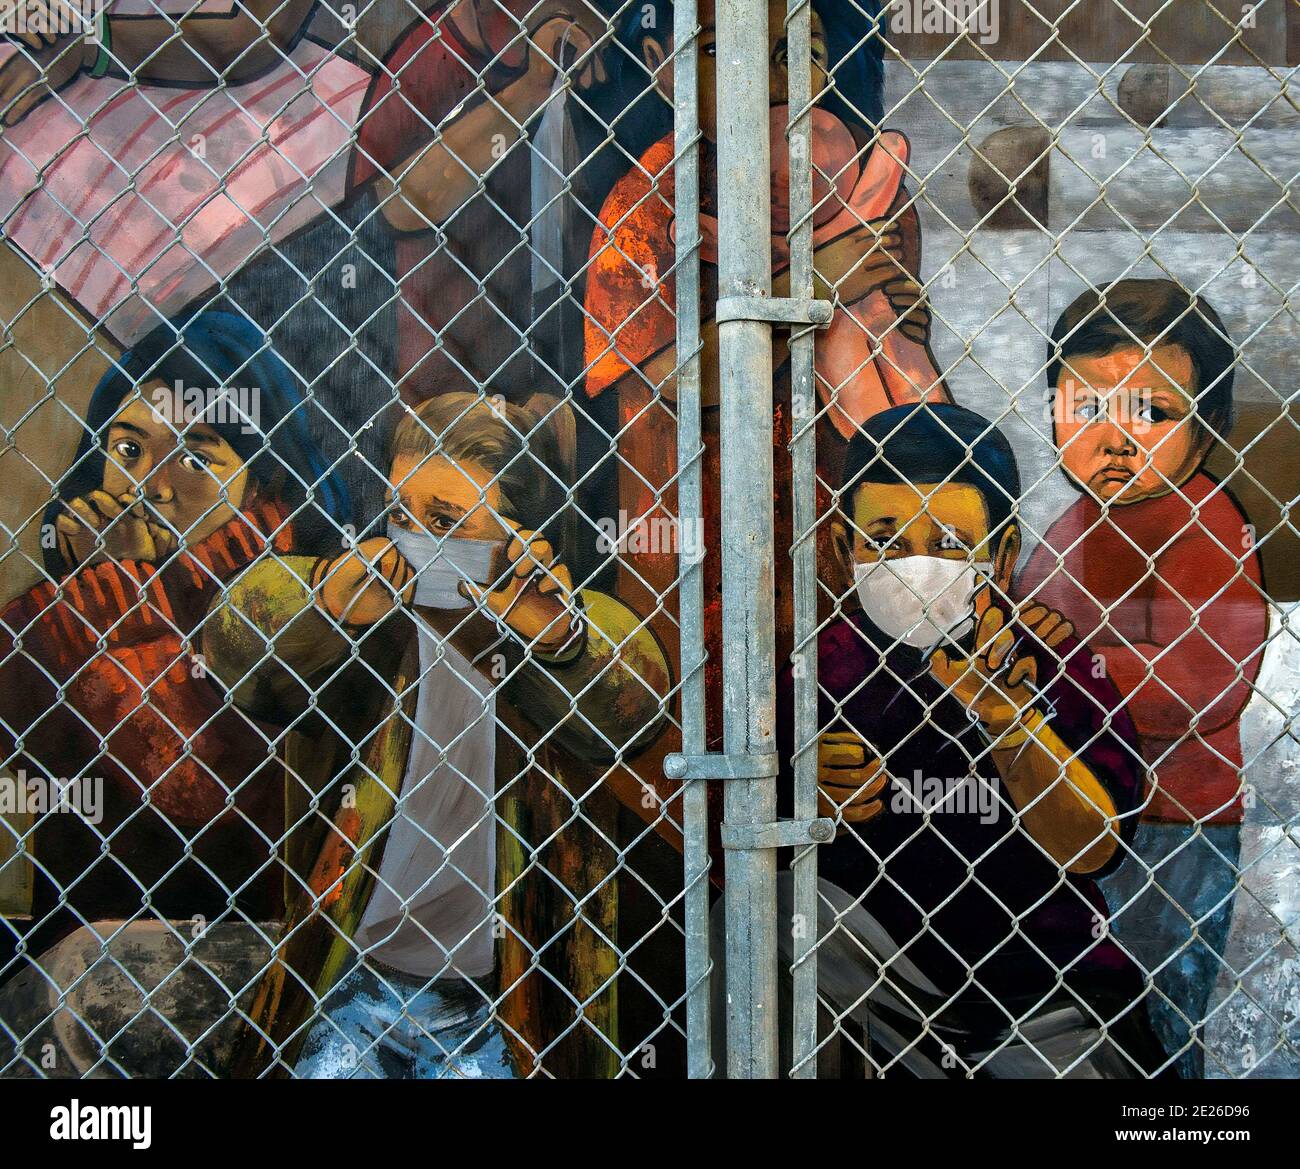 12 de enero de 2021, San Fernando, California, EE.UU. - Detalle de un mural  titulado "niños en Cages" por el artista local Lalo García en el Centro  Cívico de San Fernando. El